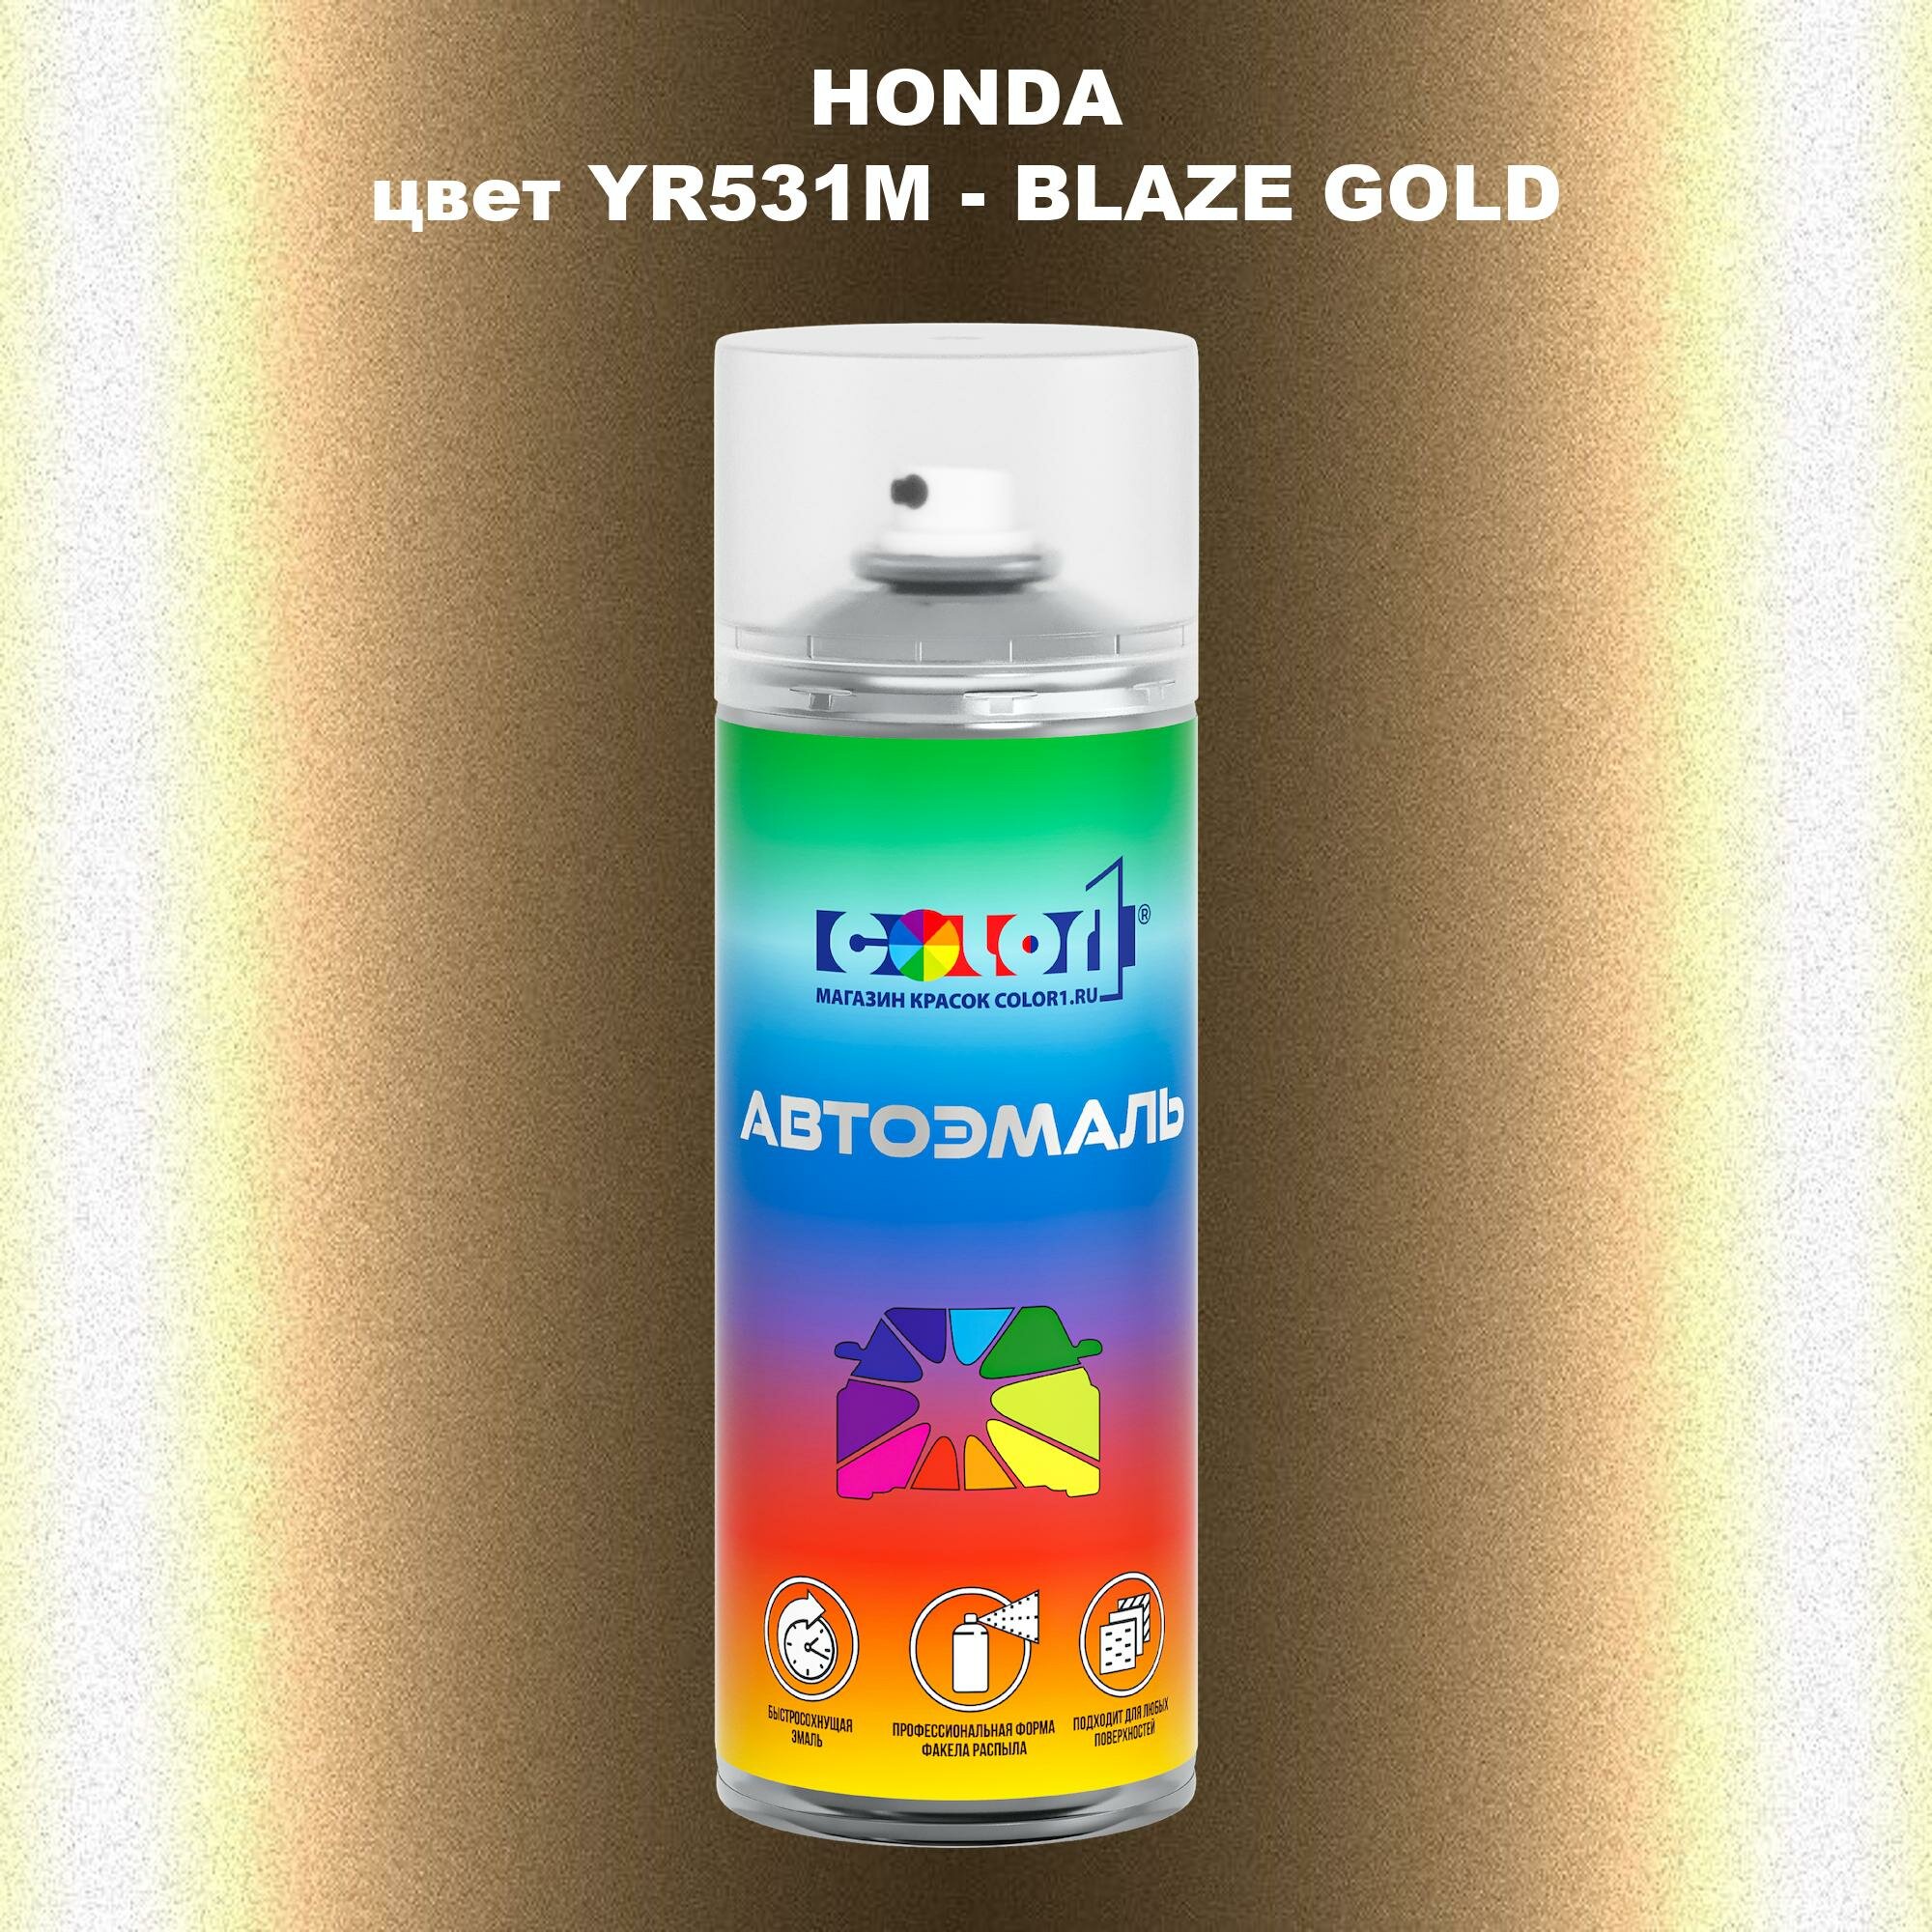 Аэрозольная краска COLOR1 для HONDA, цвет YR531M - BLAZE GOLD